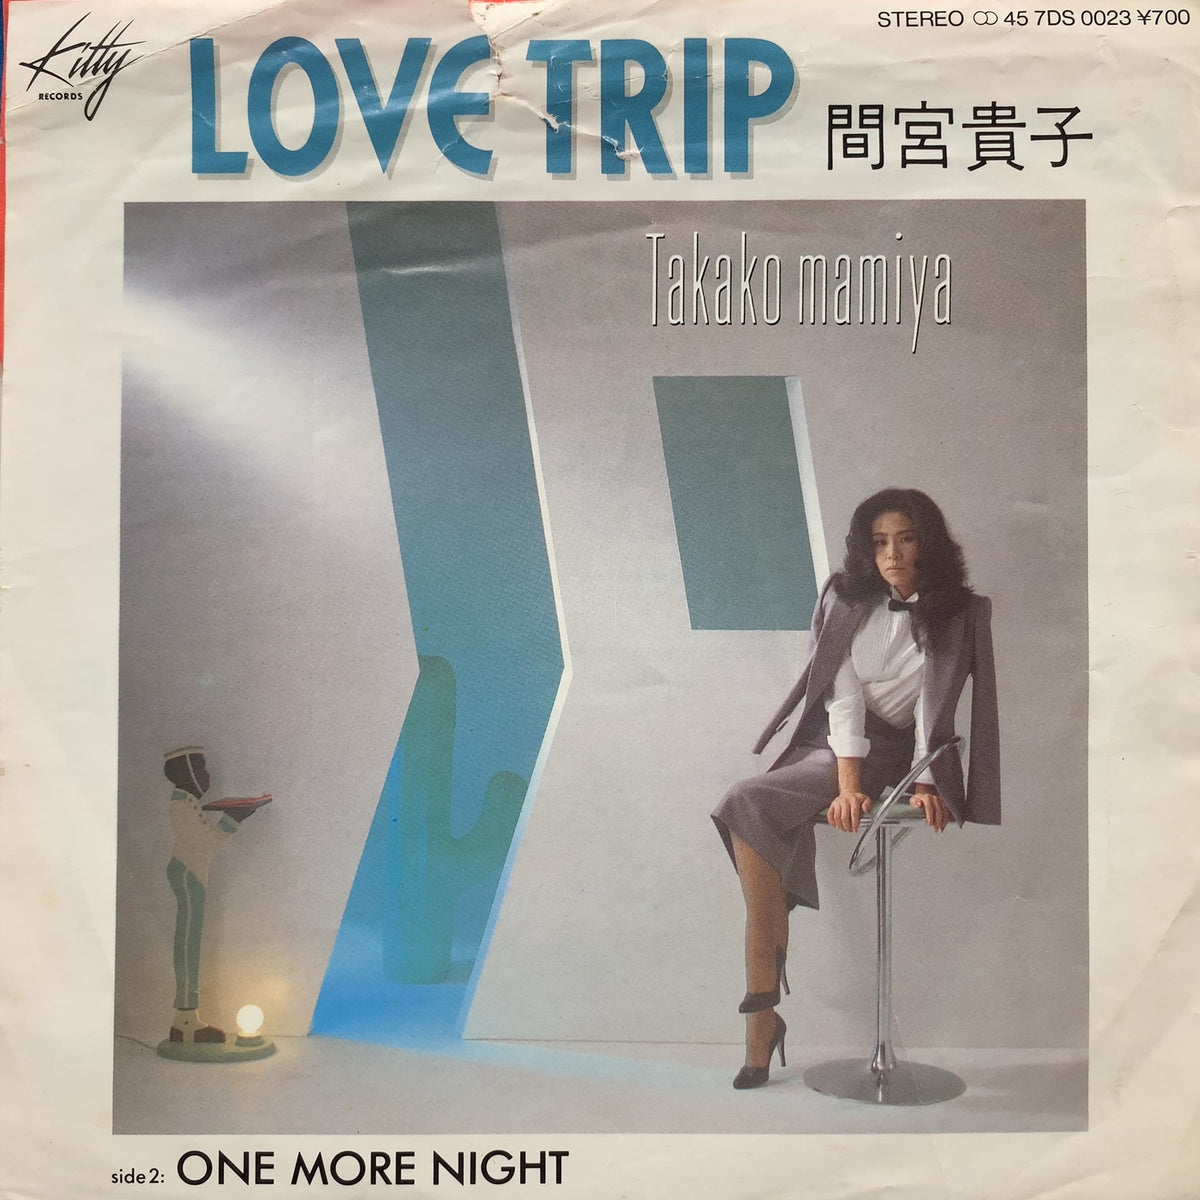 間宮貴子 love trip オリジナルシングル盤 MUROさらに幻な感じでしょ